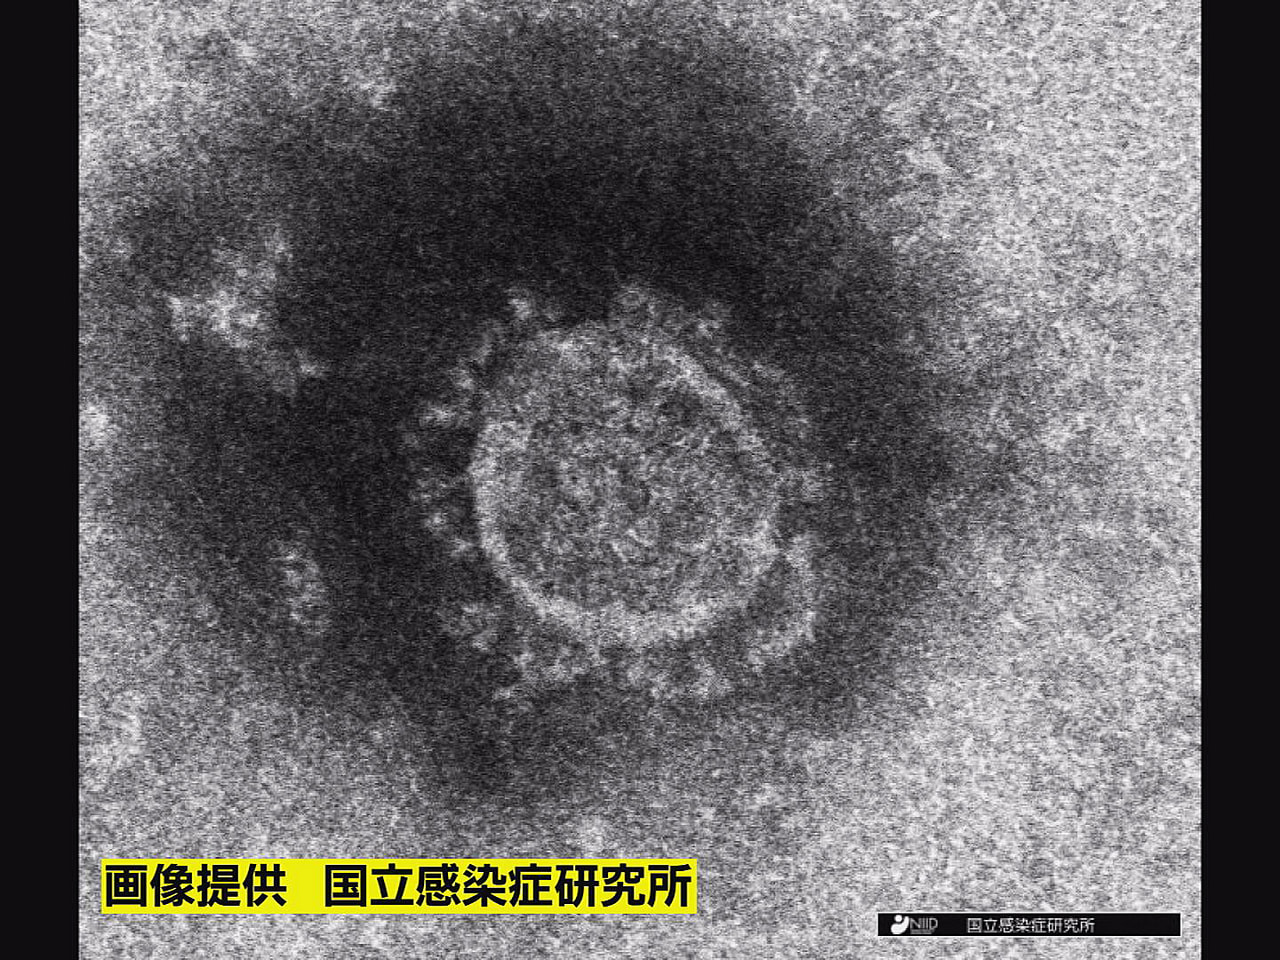 岐阜県は８日、新型コロナウイルスの新規感染者が４２０人確認されたと発表しました。...